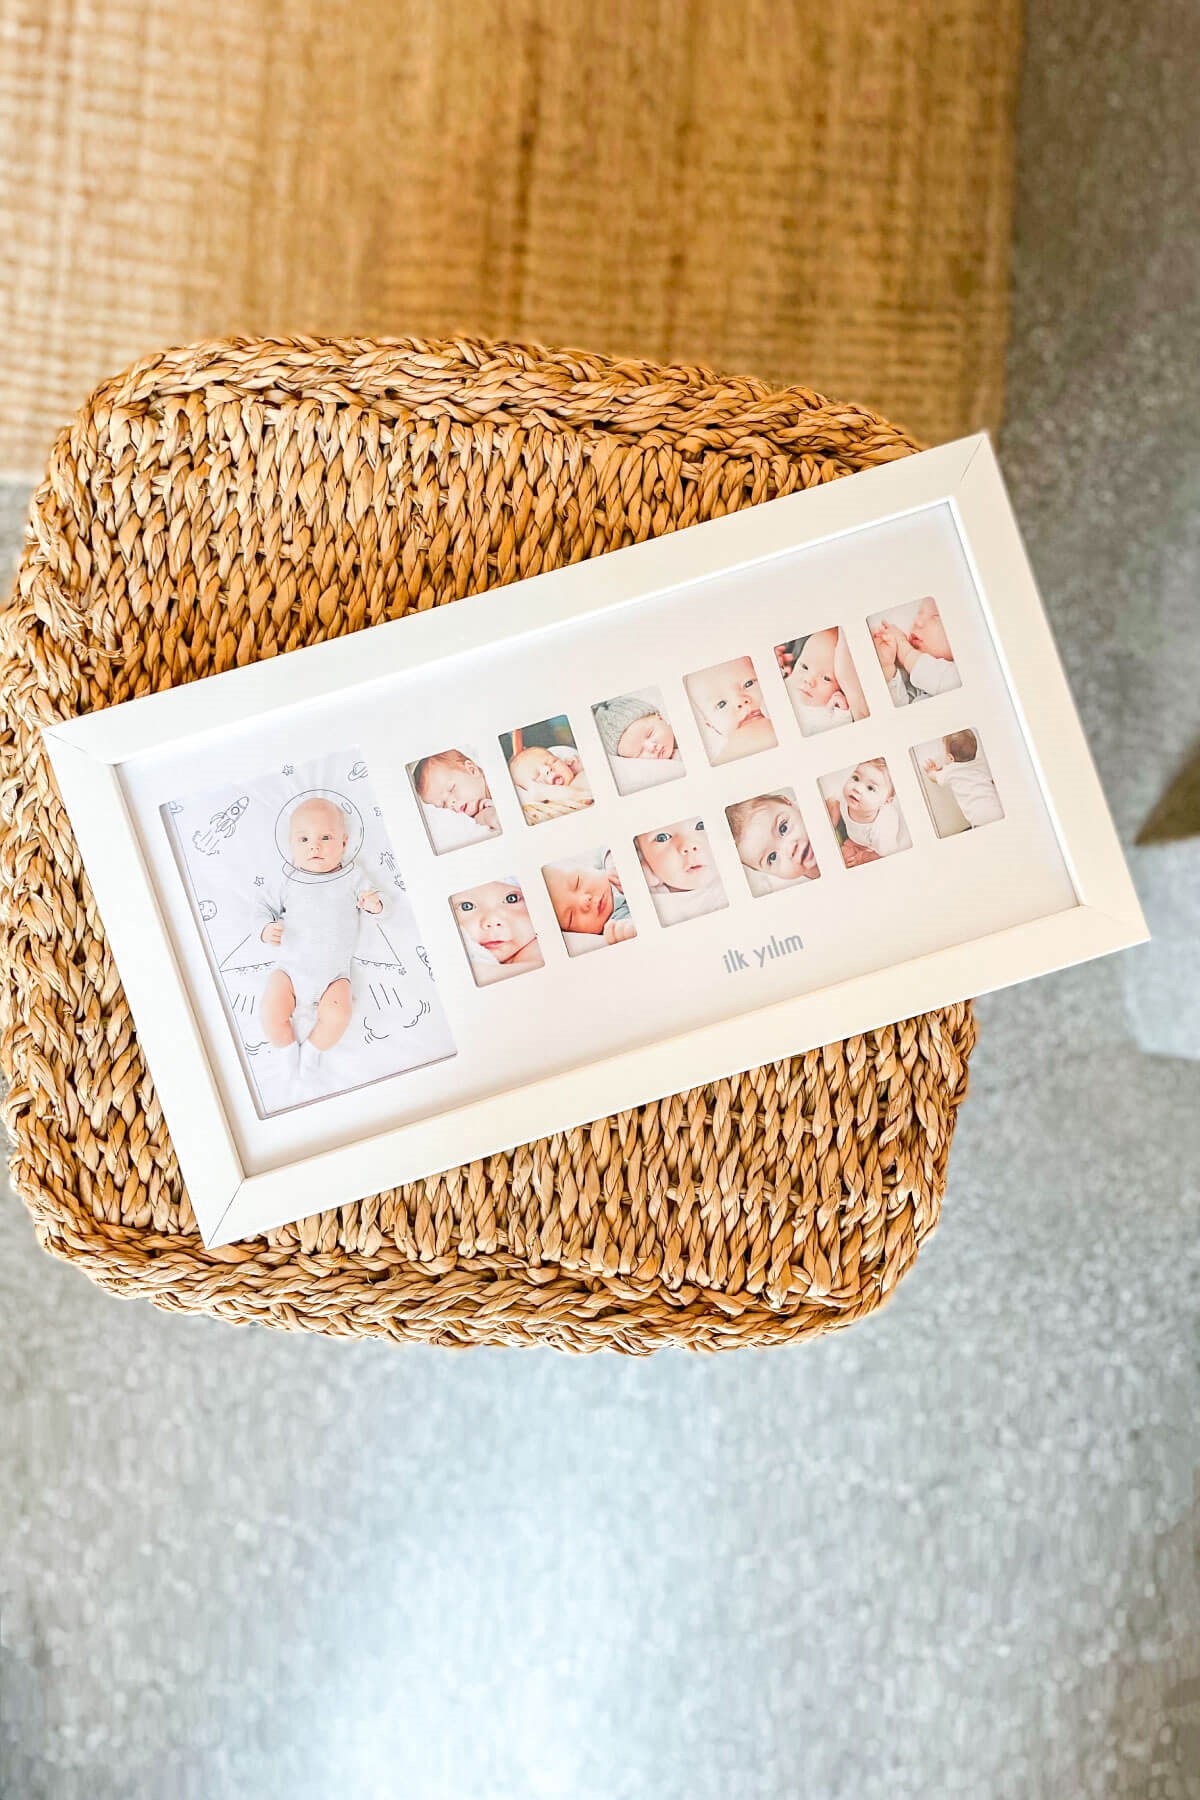 İlk Yılım Fotoğraf Anı Çerçevesi - Dekoratif Bebek Odası 12 Aylık Resim  Hatıra Çerçevesi - Fufizu